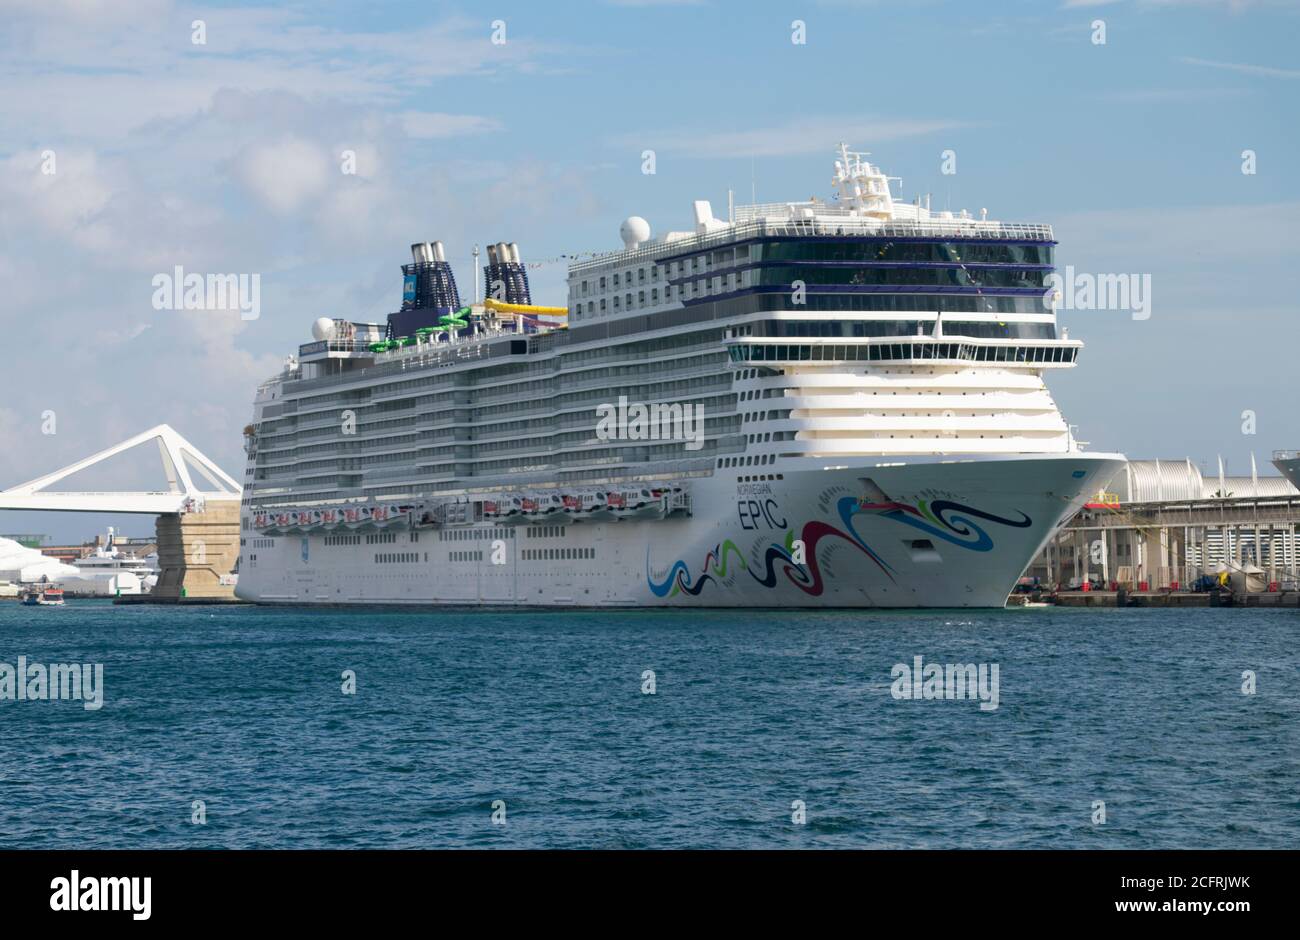 Navire de croisière norvégien Epic de la compagnie norvégienne Cruise Line amarré dans le port de Barcelone. 20 octobre 2019. Banque D'Images